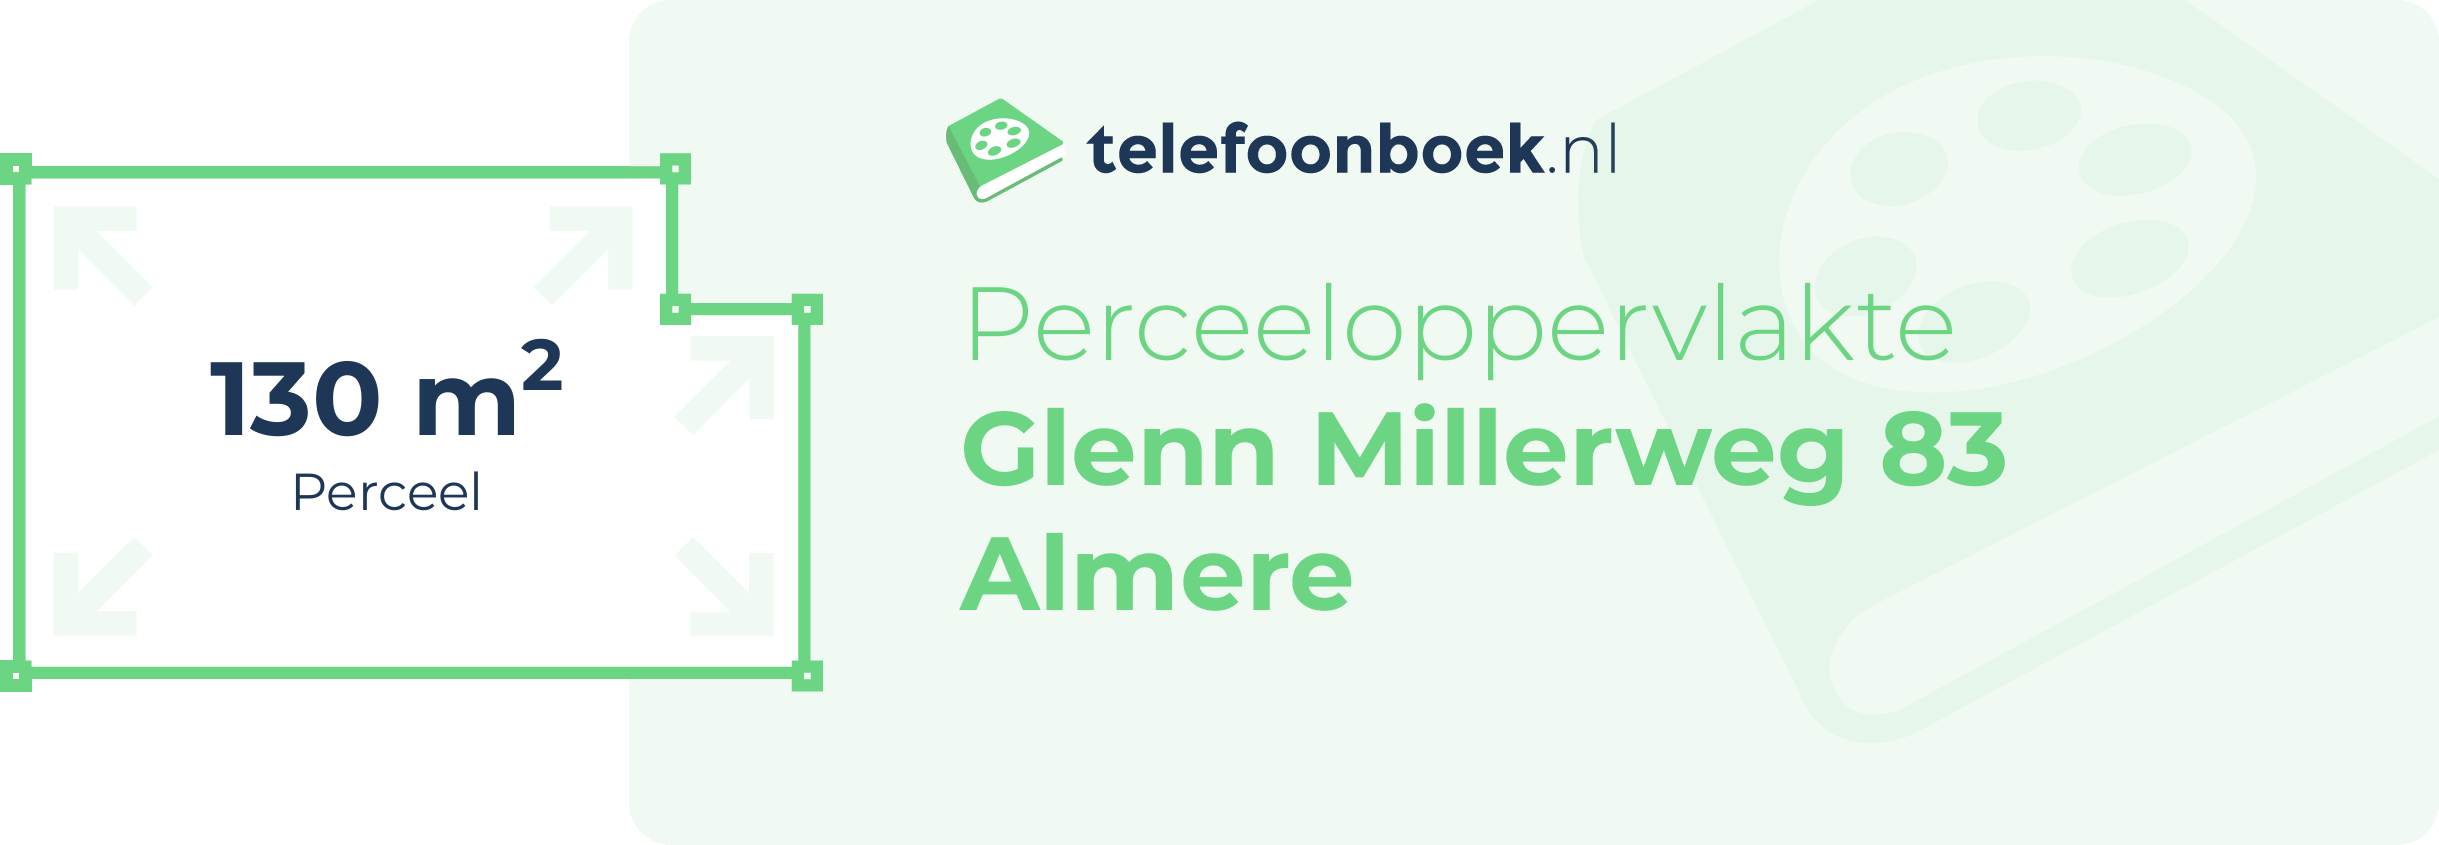 Perceeloppervlakte Glenn Millerweg 83 Almere